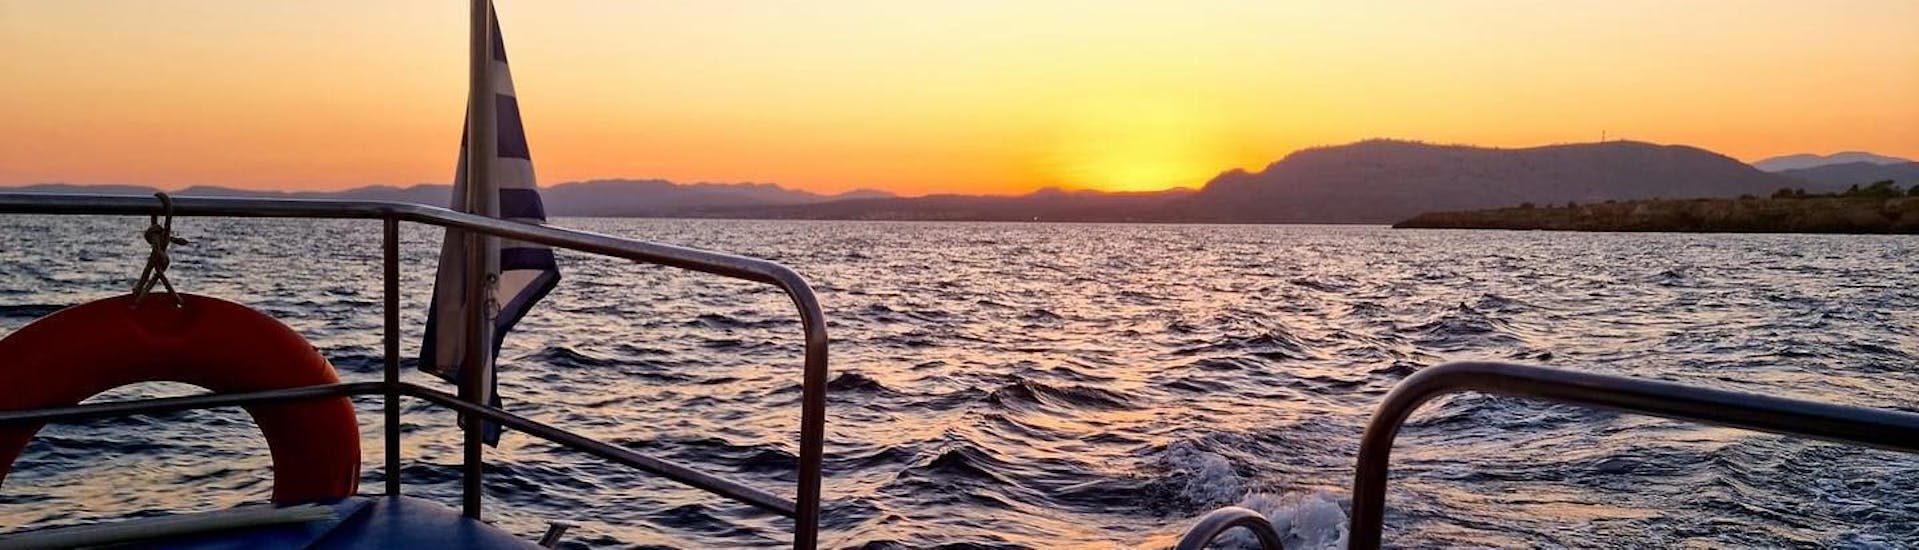 Le bateau navigue sous le coucher de soleil lors de la Balade privée en bateau à fond de verre au coucher du soleil à Pefkos avec Baignade.